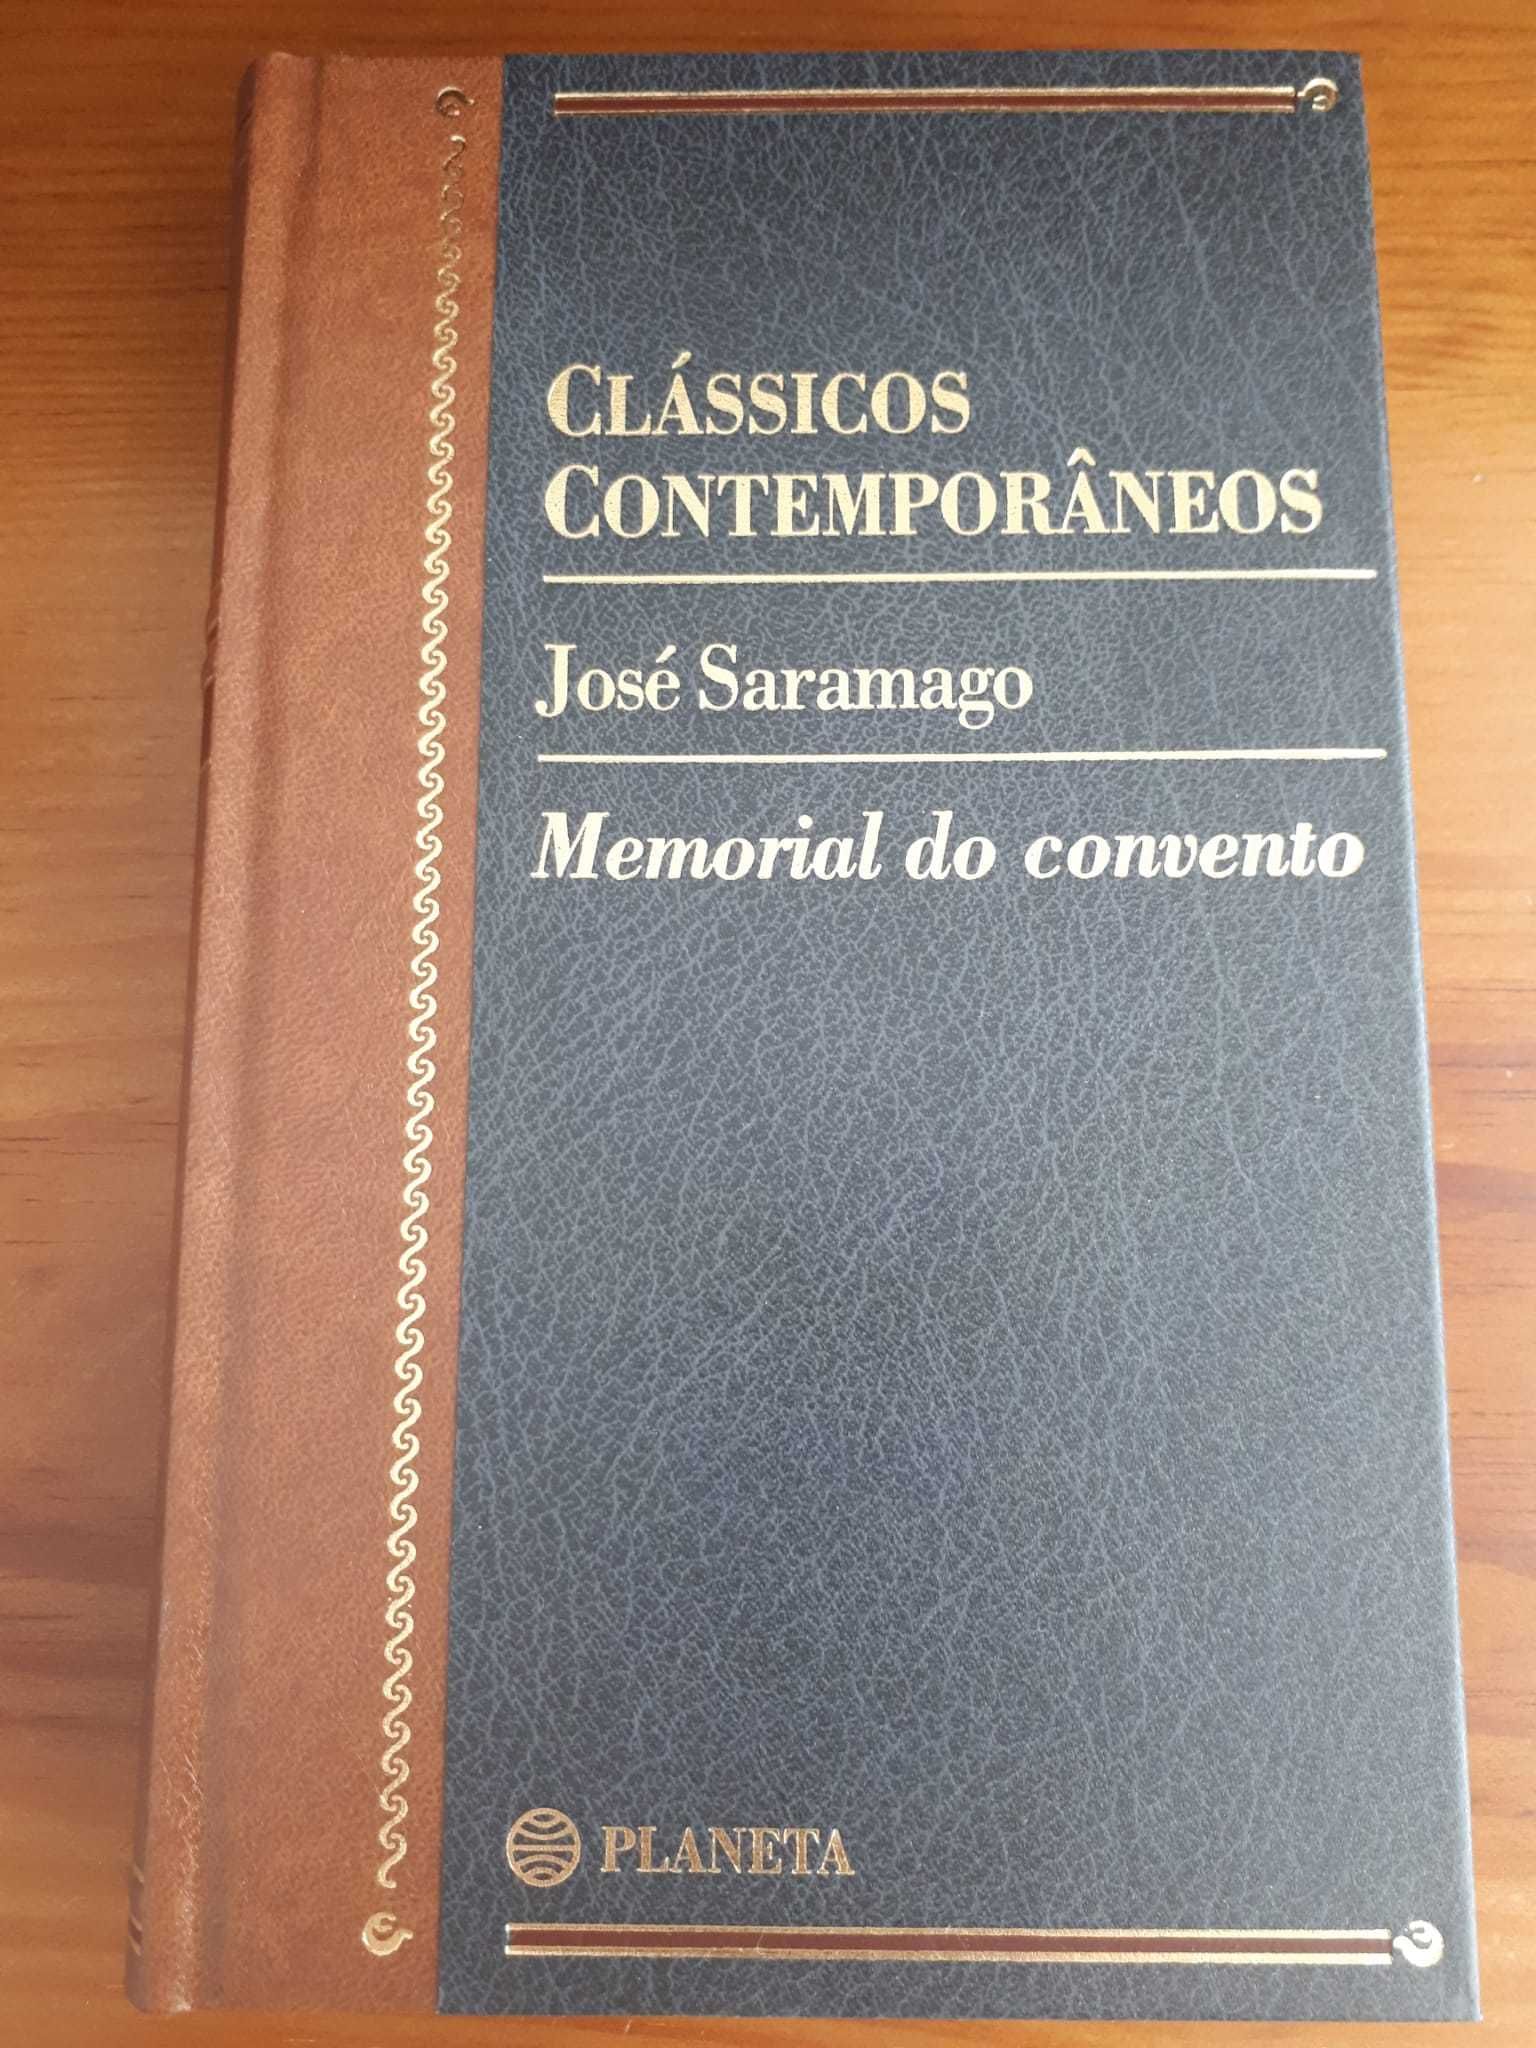 Coleção de 45 livros - Clássicos Contemporâneos - Editora Planeta.